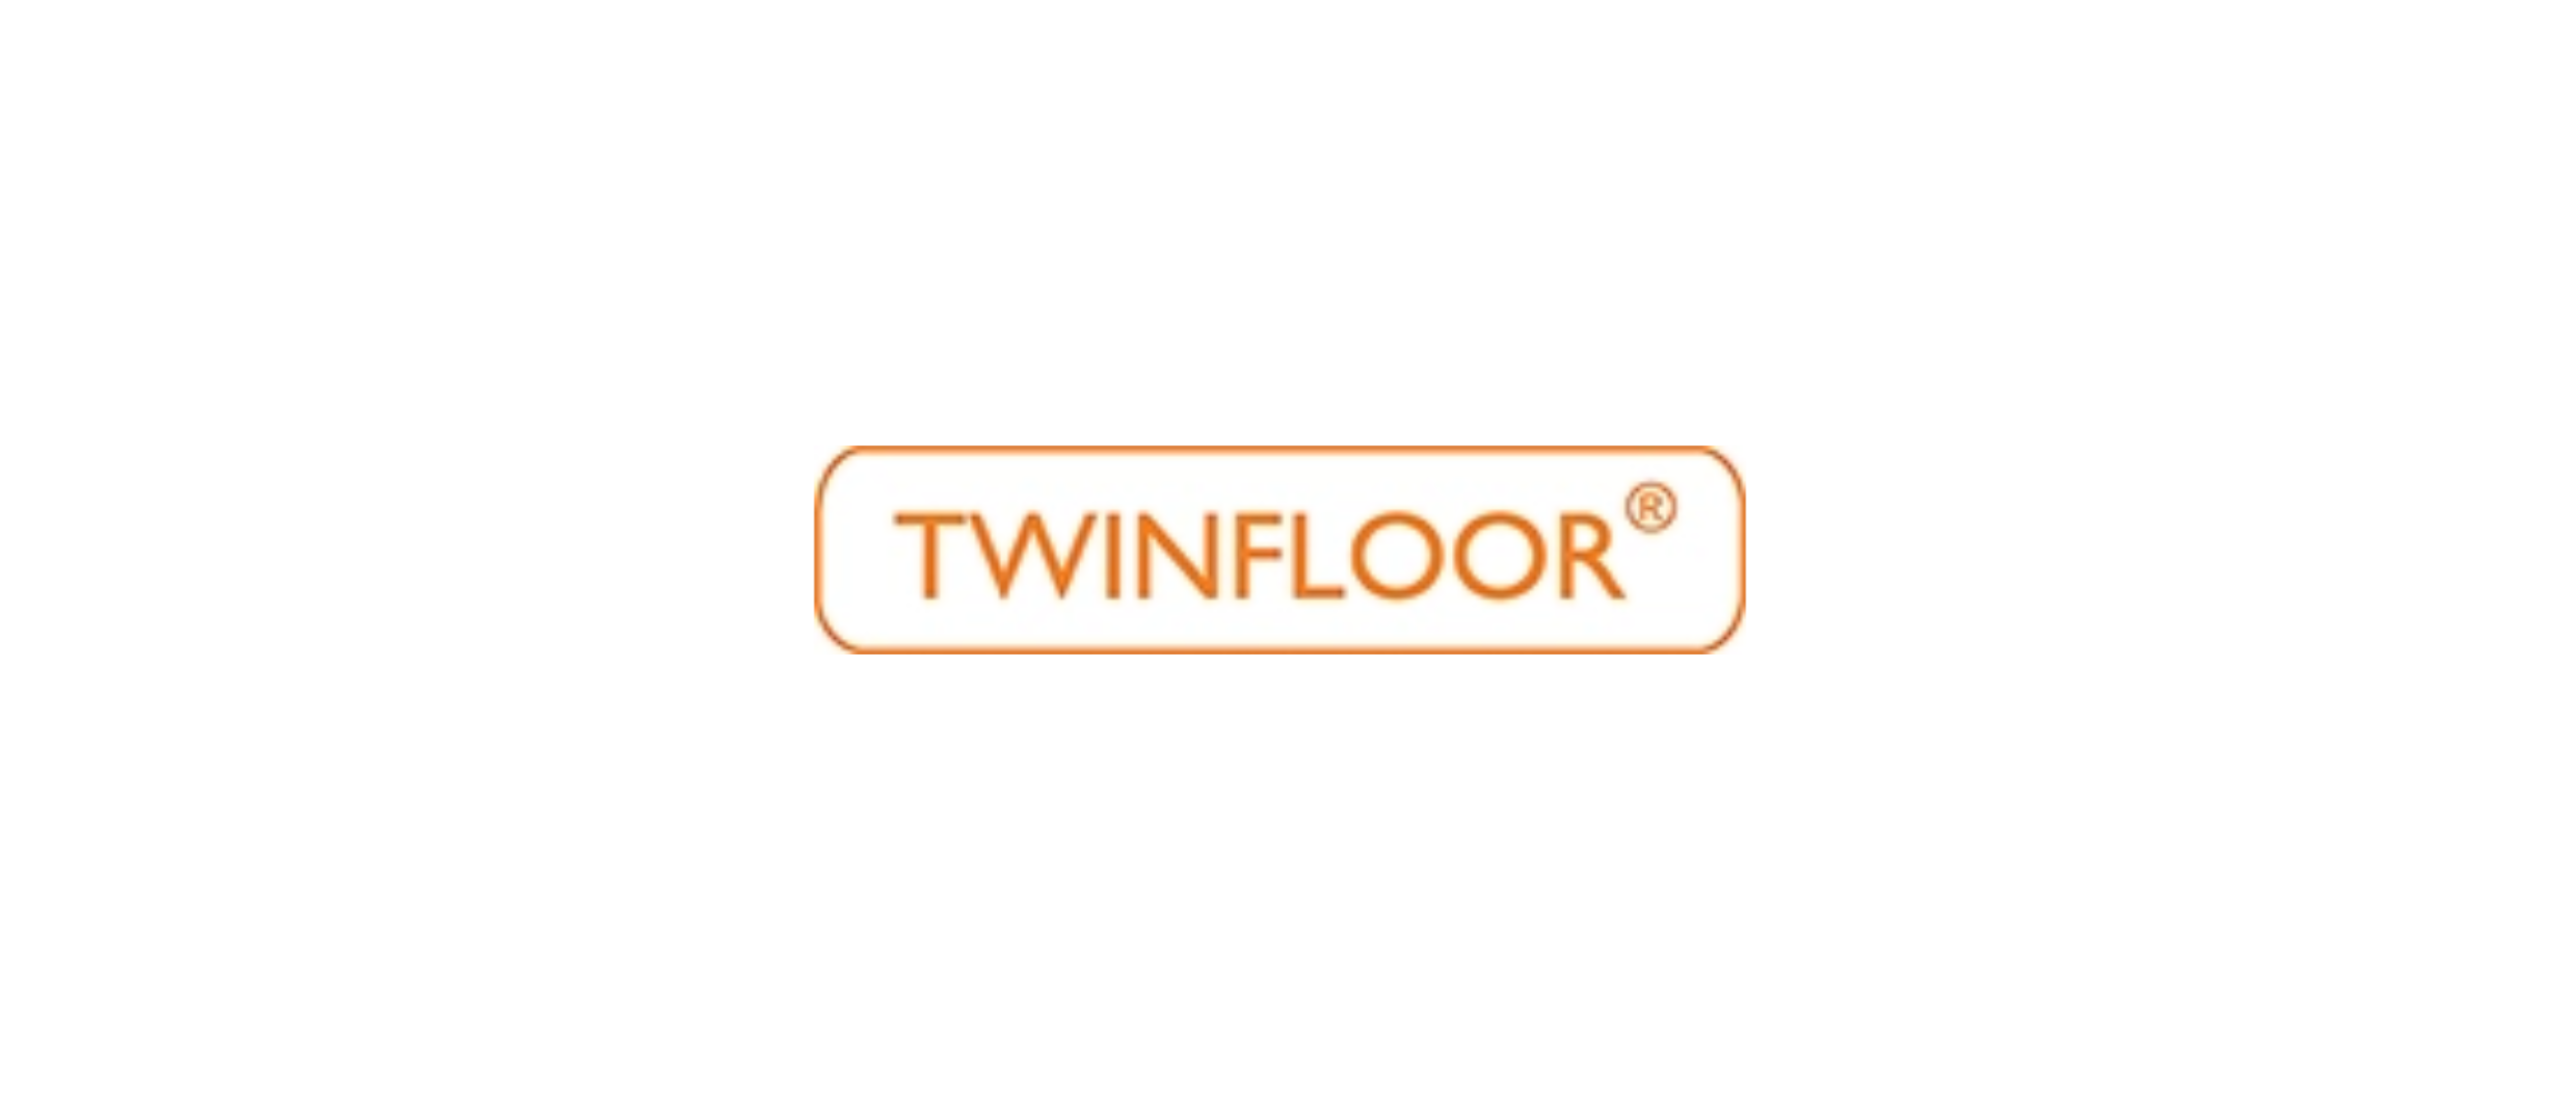 Twinfloor: een bedrijf met een visie